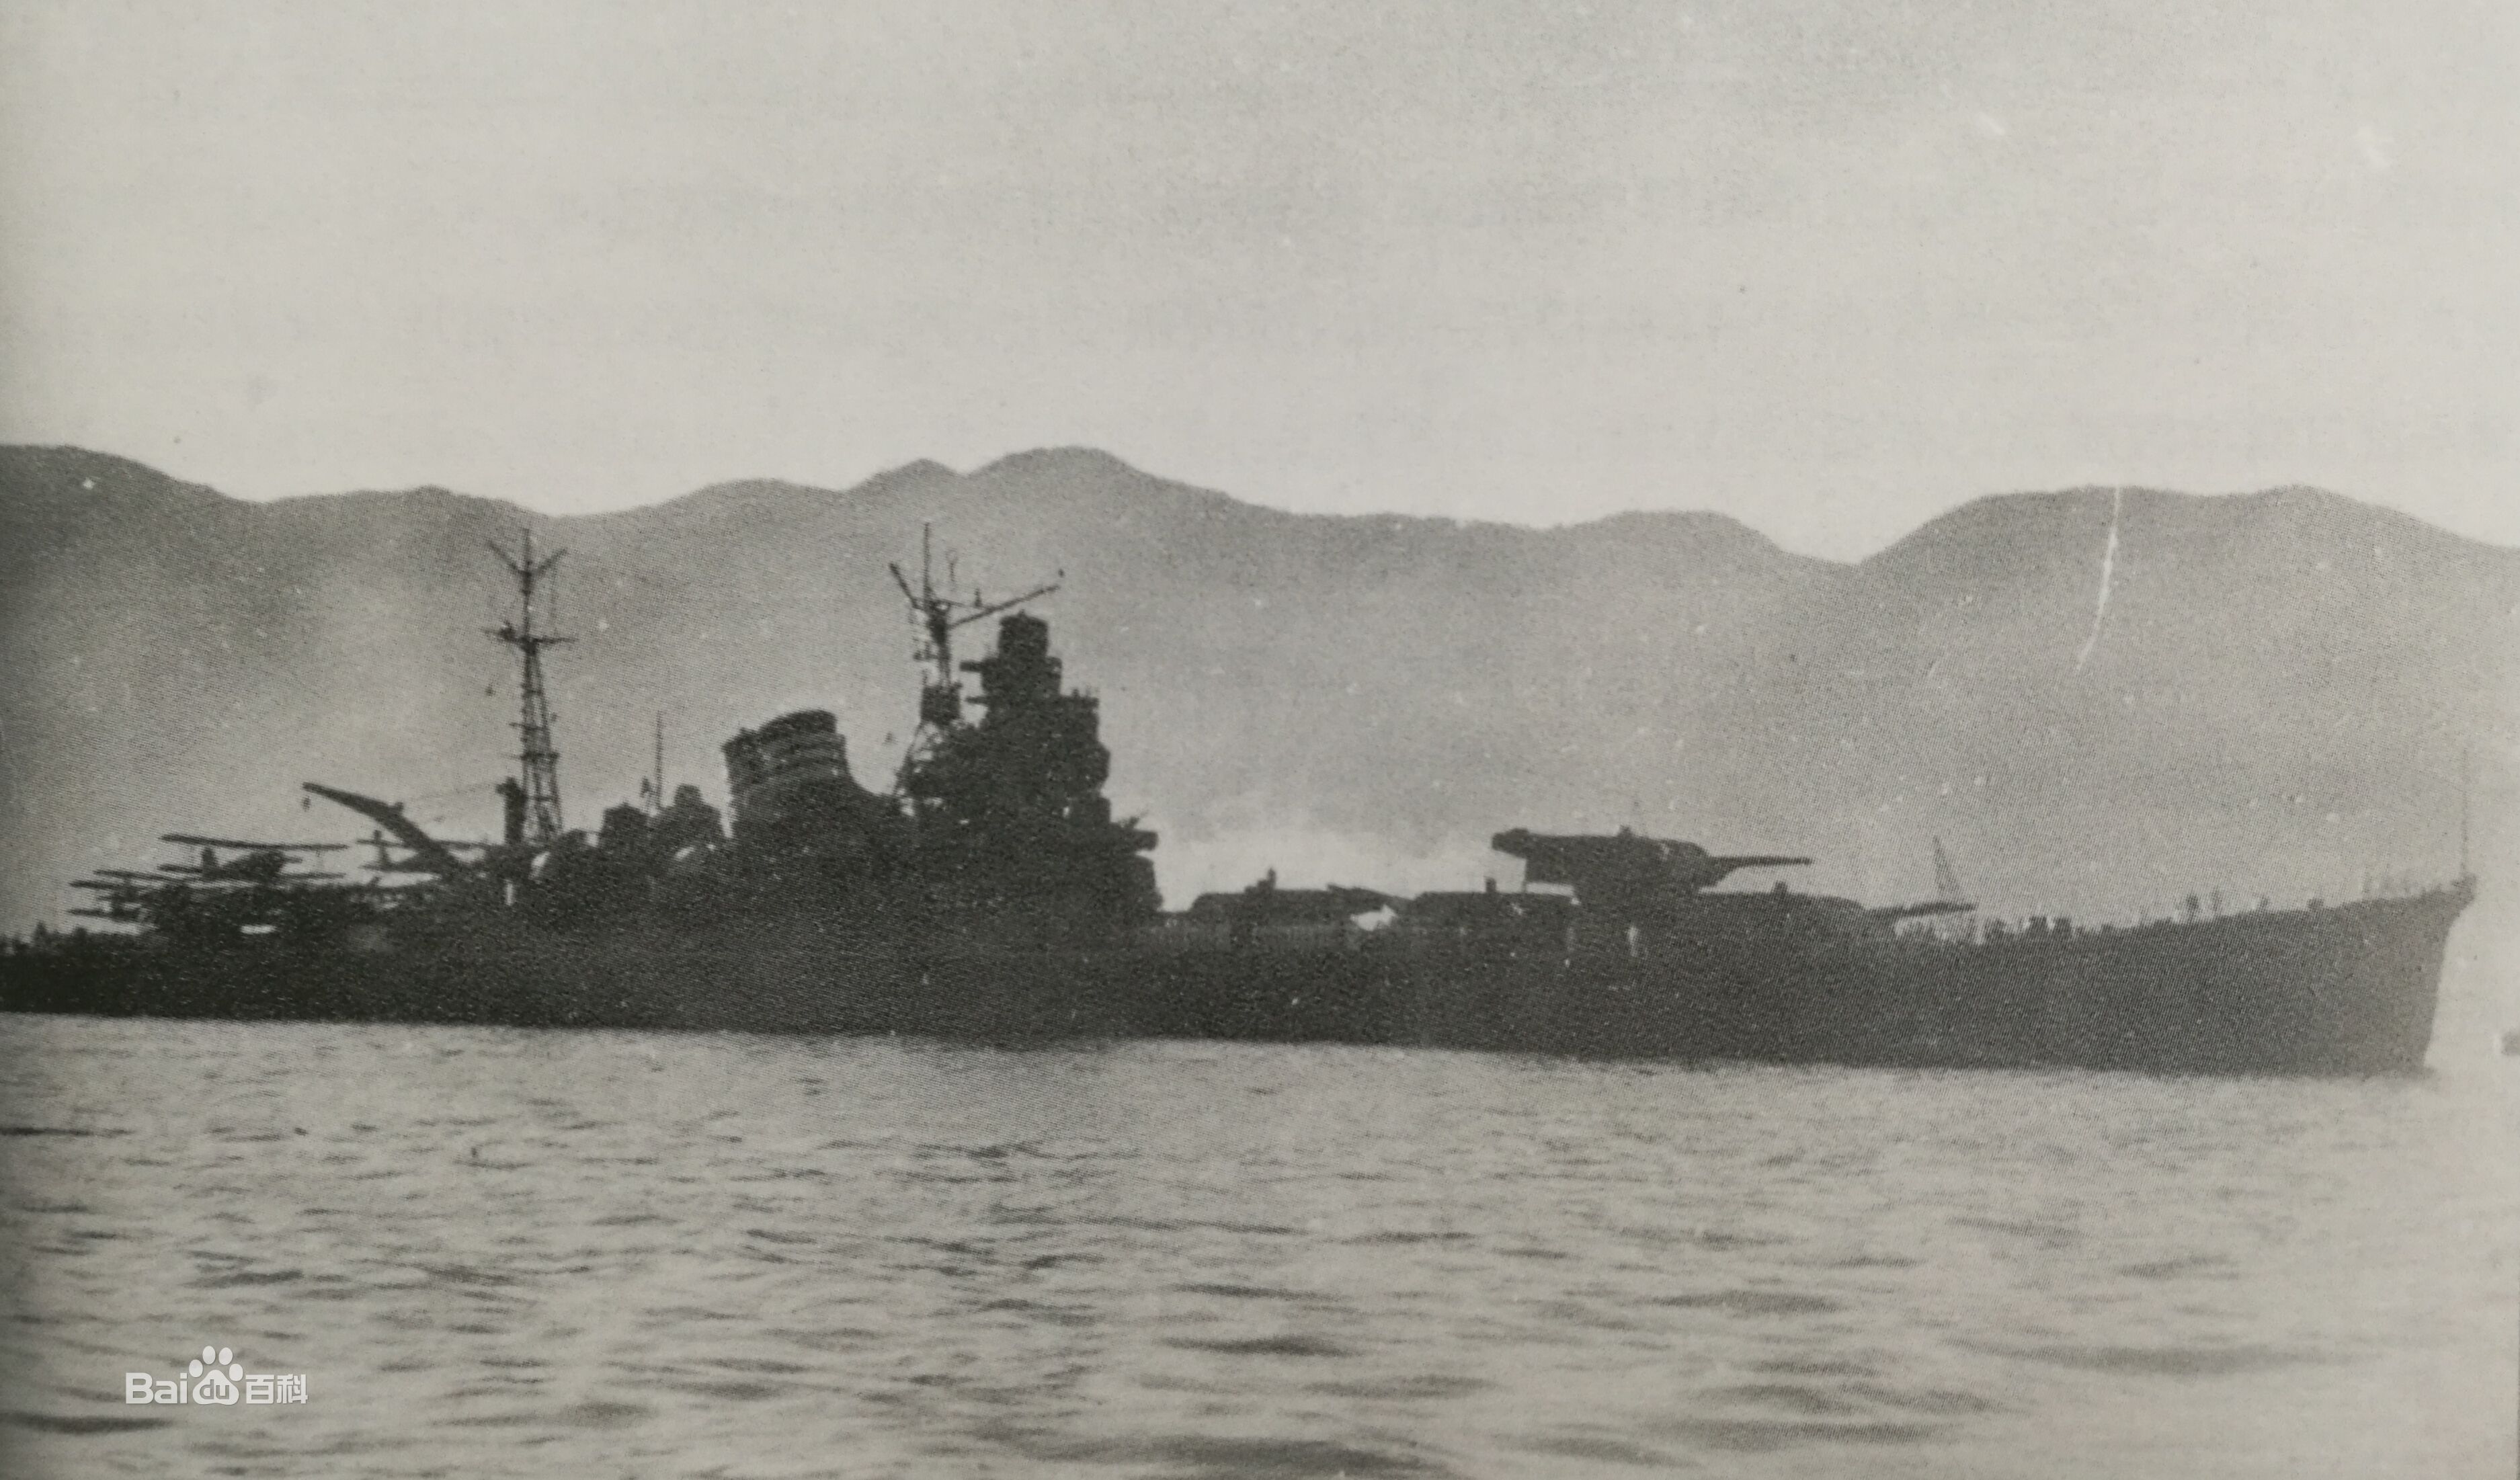 它是日本海军最后一级重巡洋舰,拥有非常突出的航空侦察能力